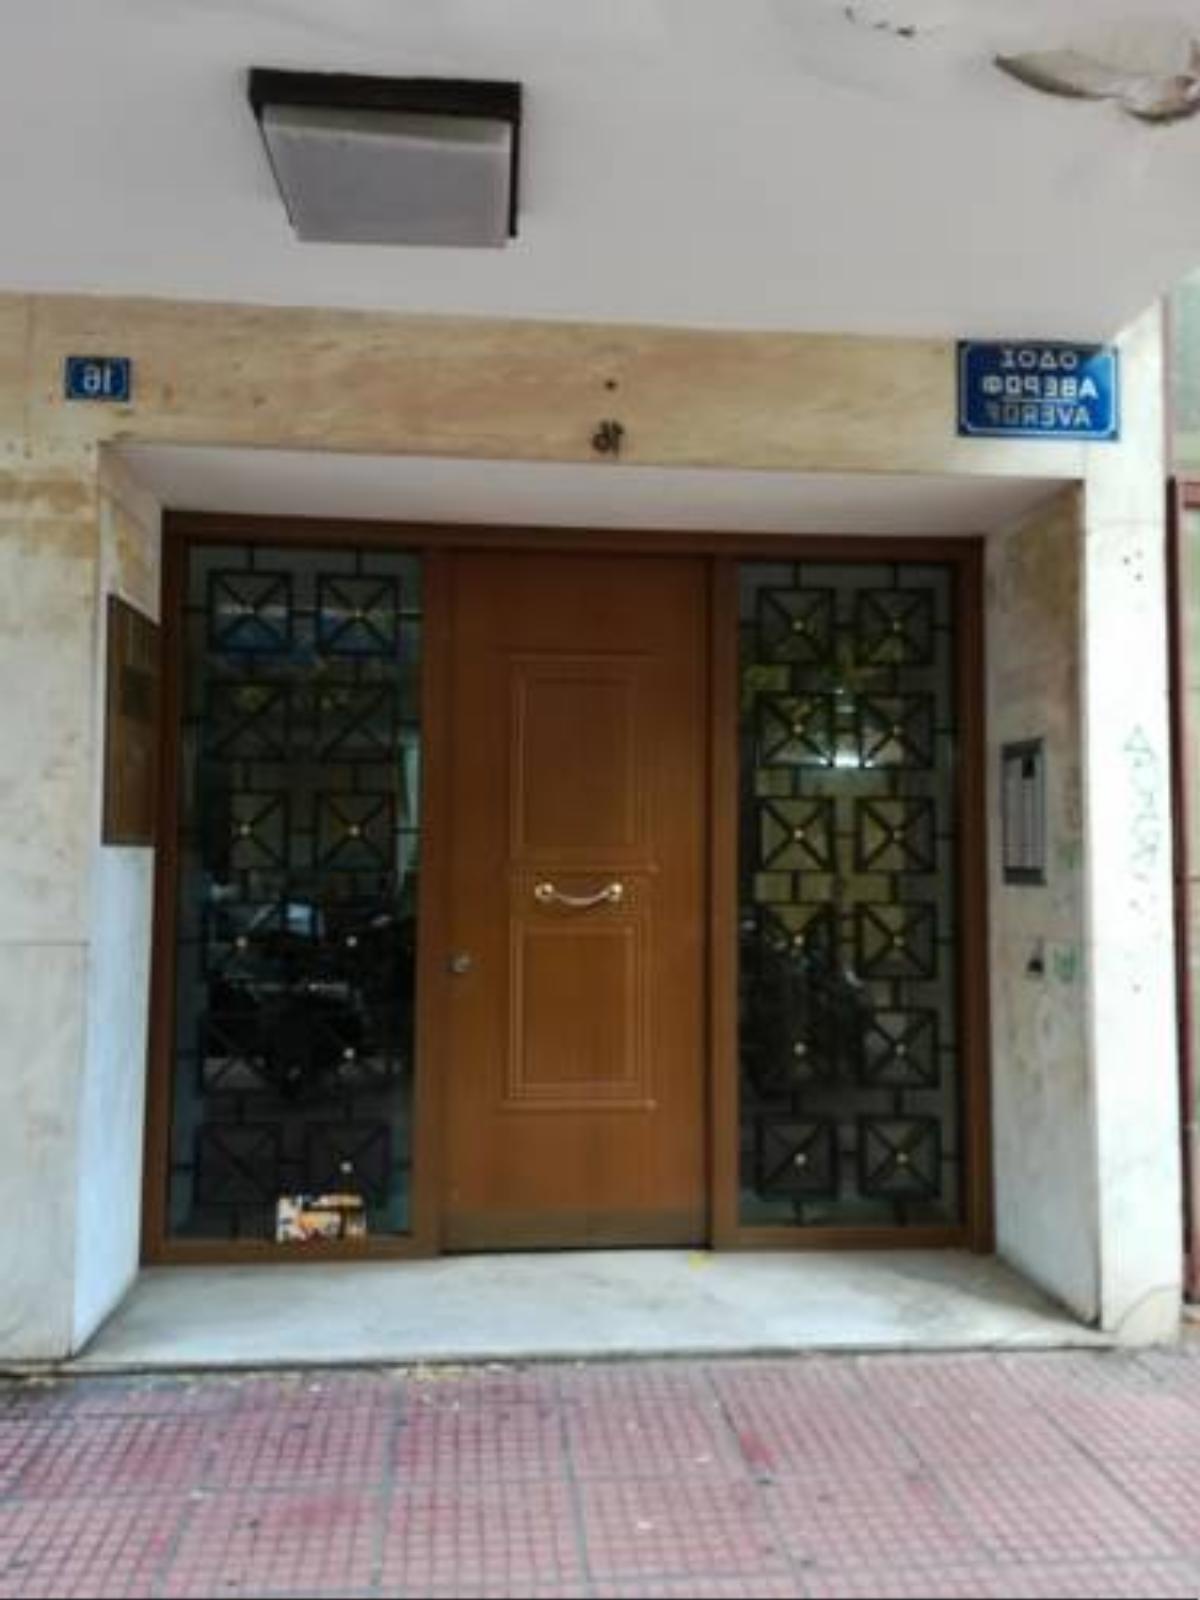 Casta Diva Apartment Hotel Athens Greece